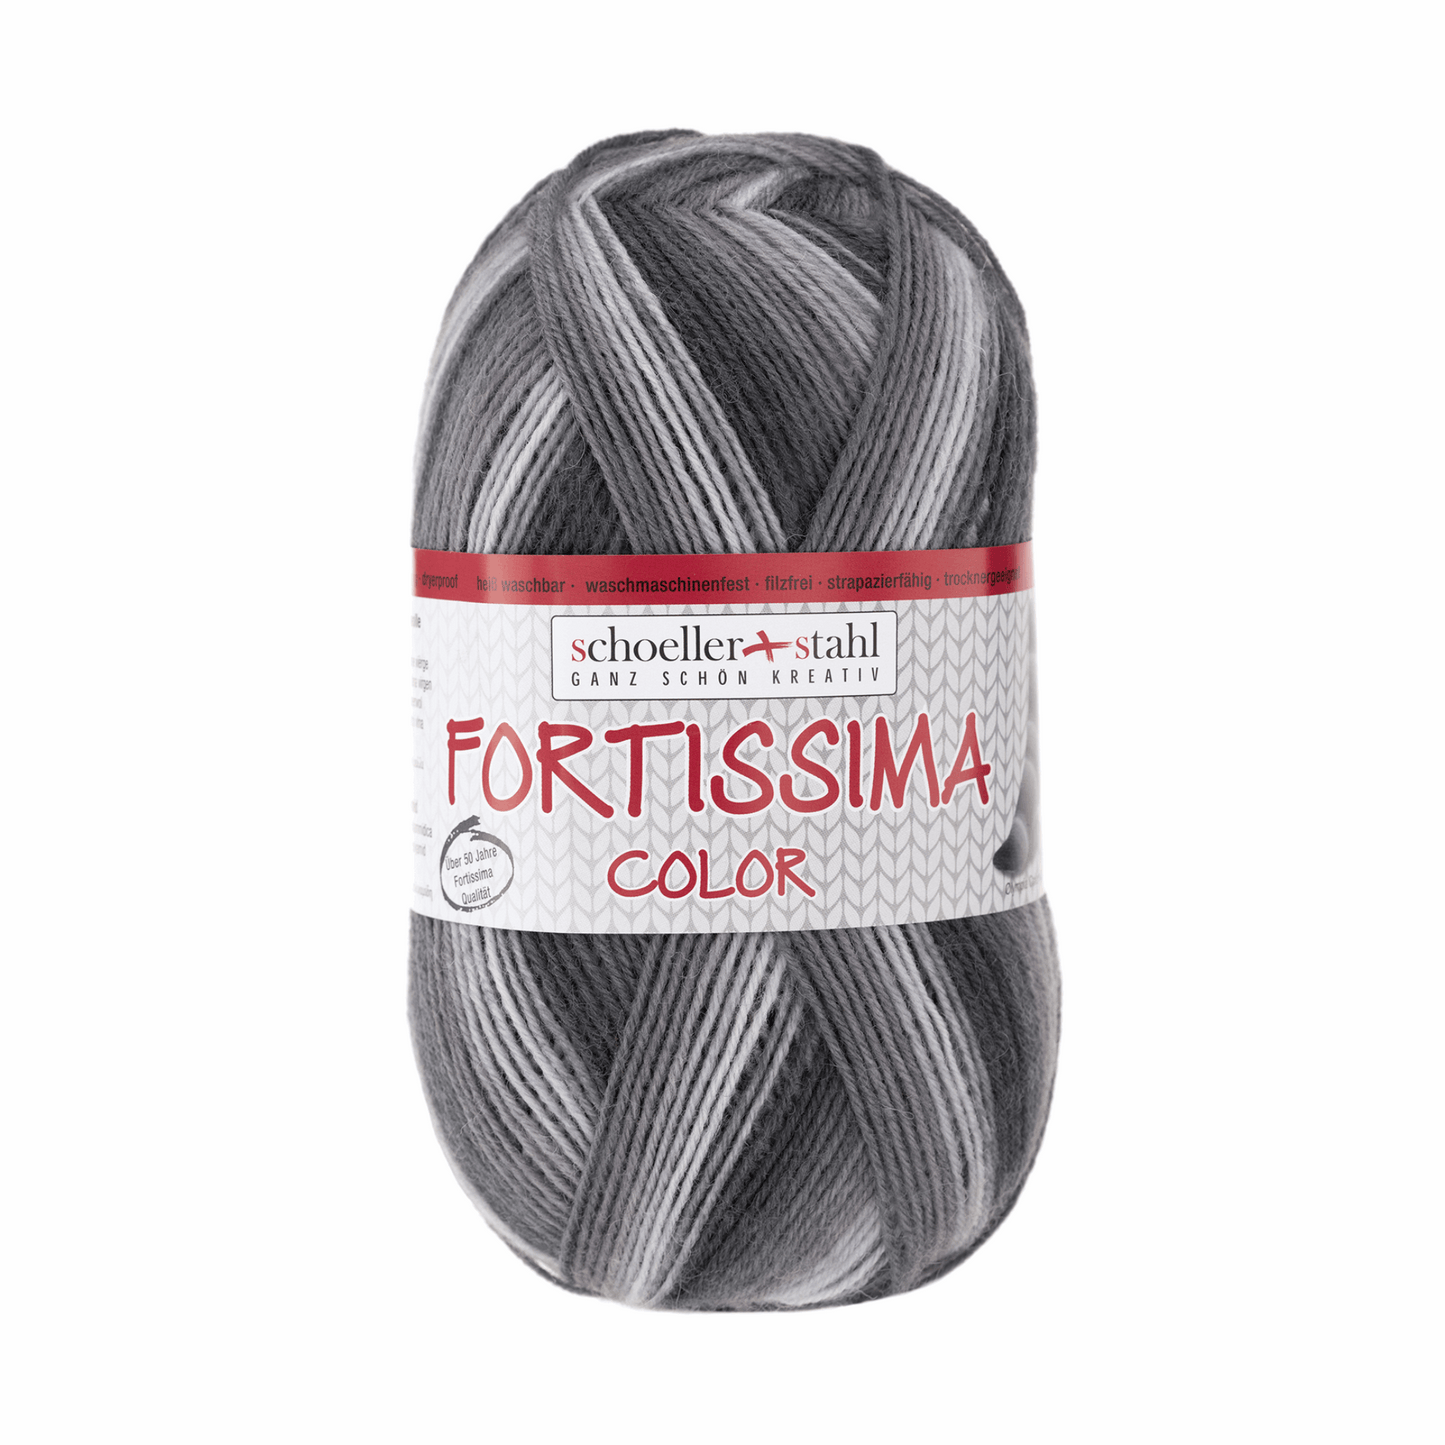 Fortissima socka 4fädrig color, 90028, Farbe 2434, sapporo